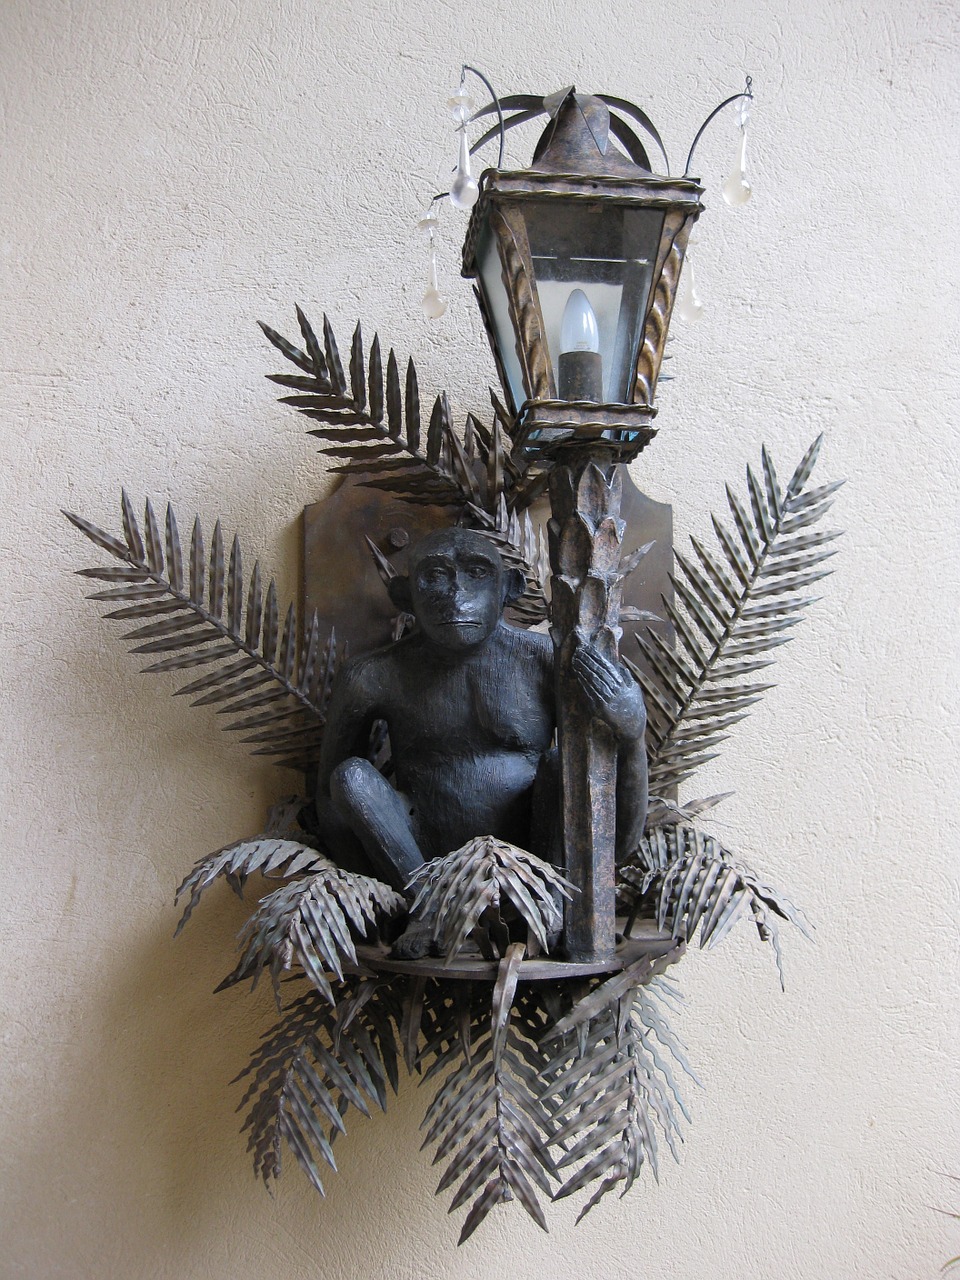 monkey lamp äffchen free photo